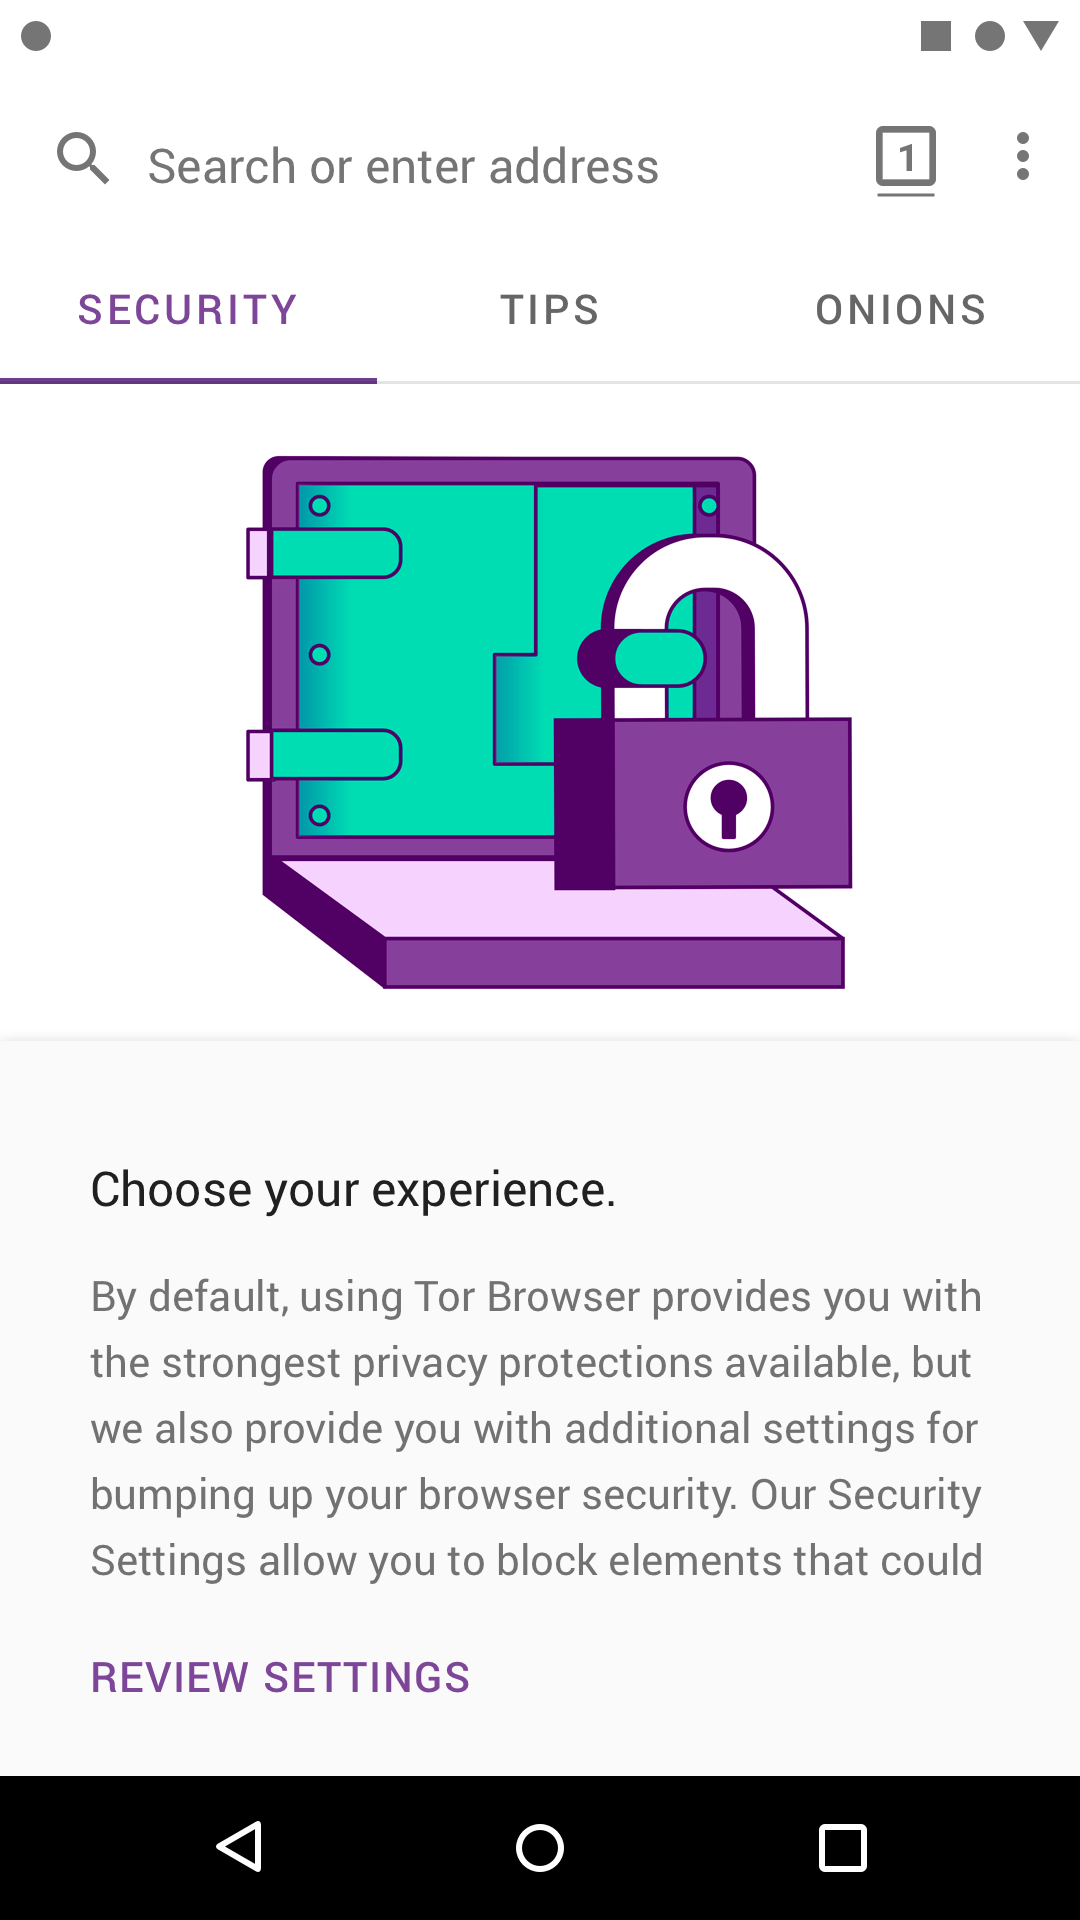 скачать бесплатно tor browser для ipad gidra